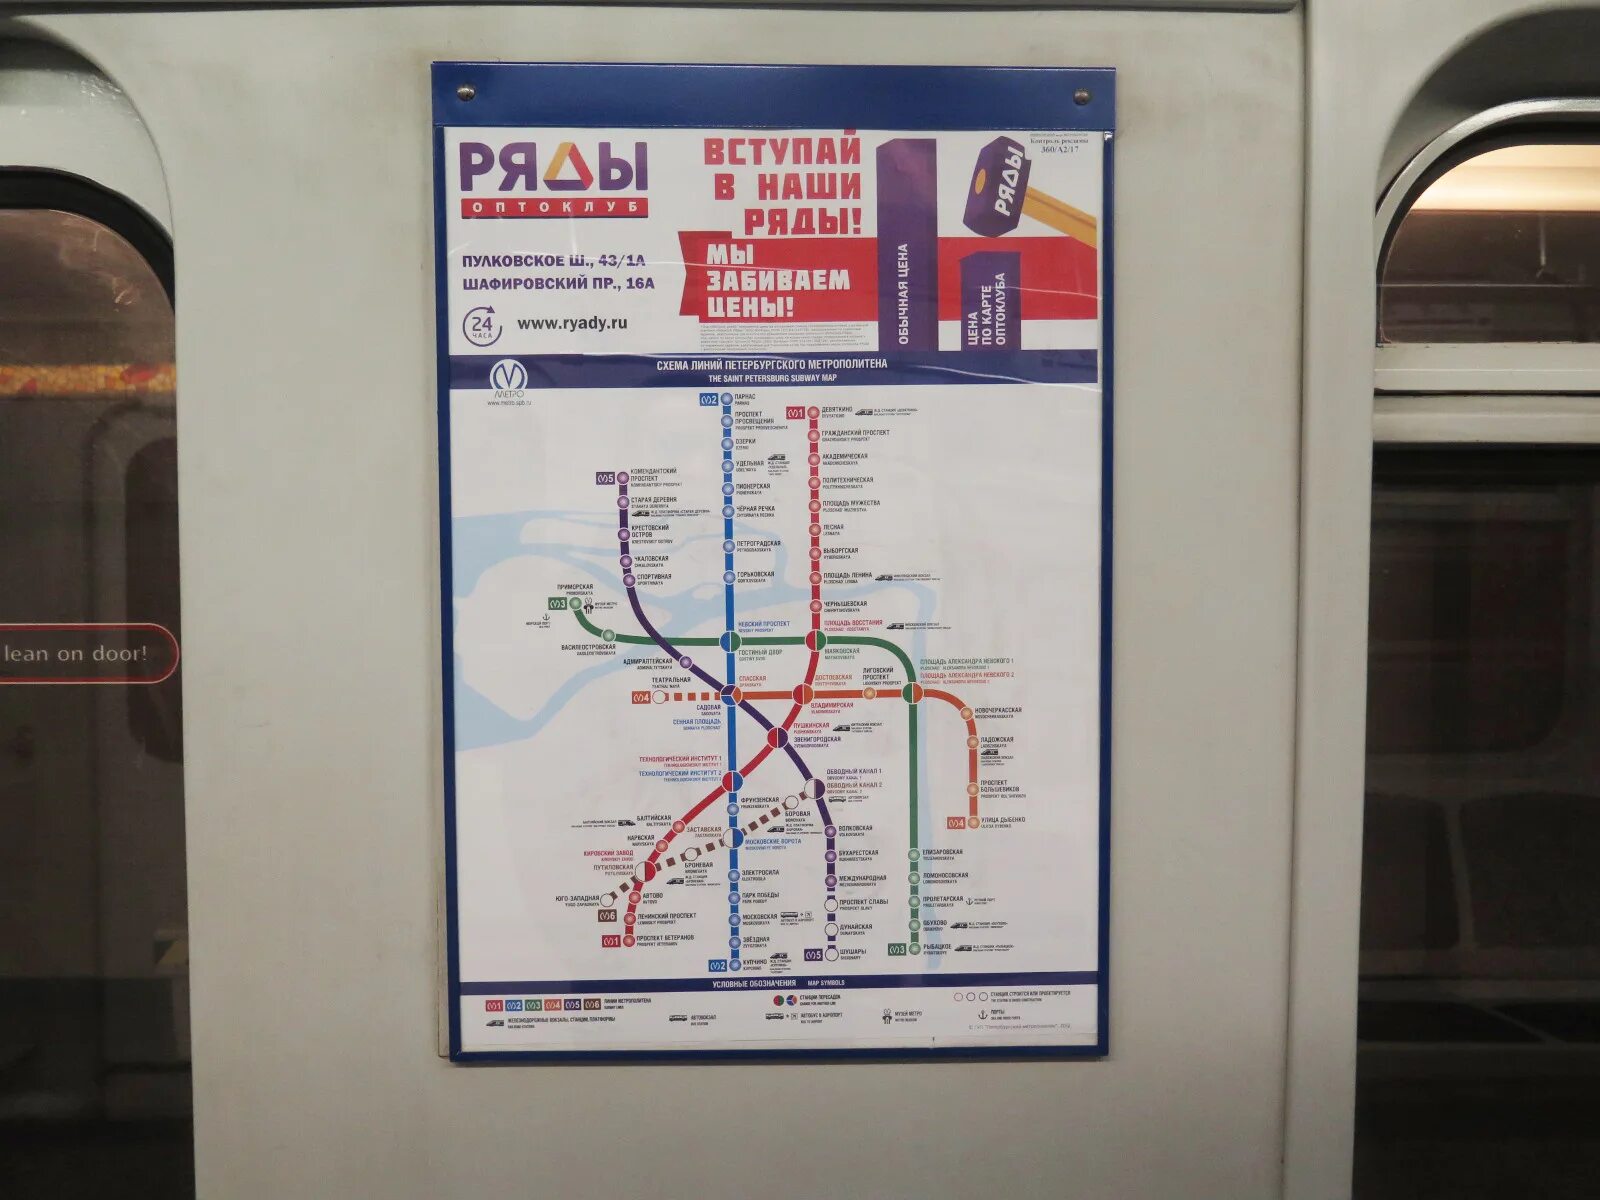 Метро доставка спб. Метро СПБ. Реклама в метро СПБ. Реклама в метро Санкт-Петербурга. Реклама в метро.